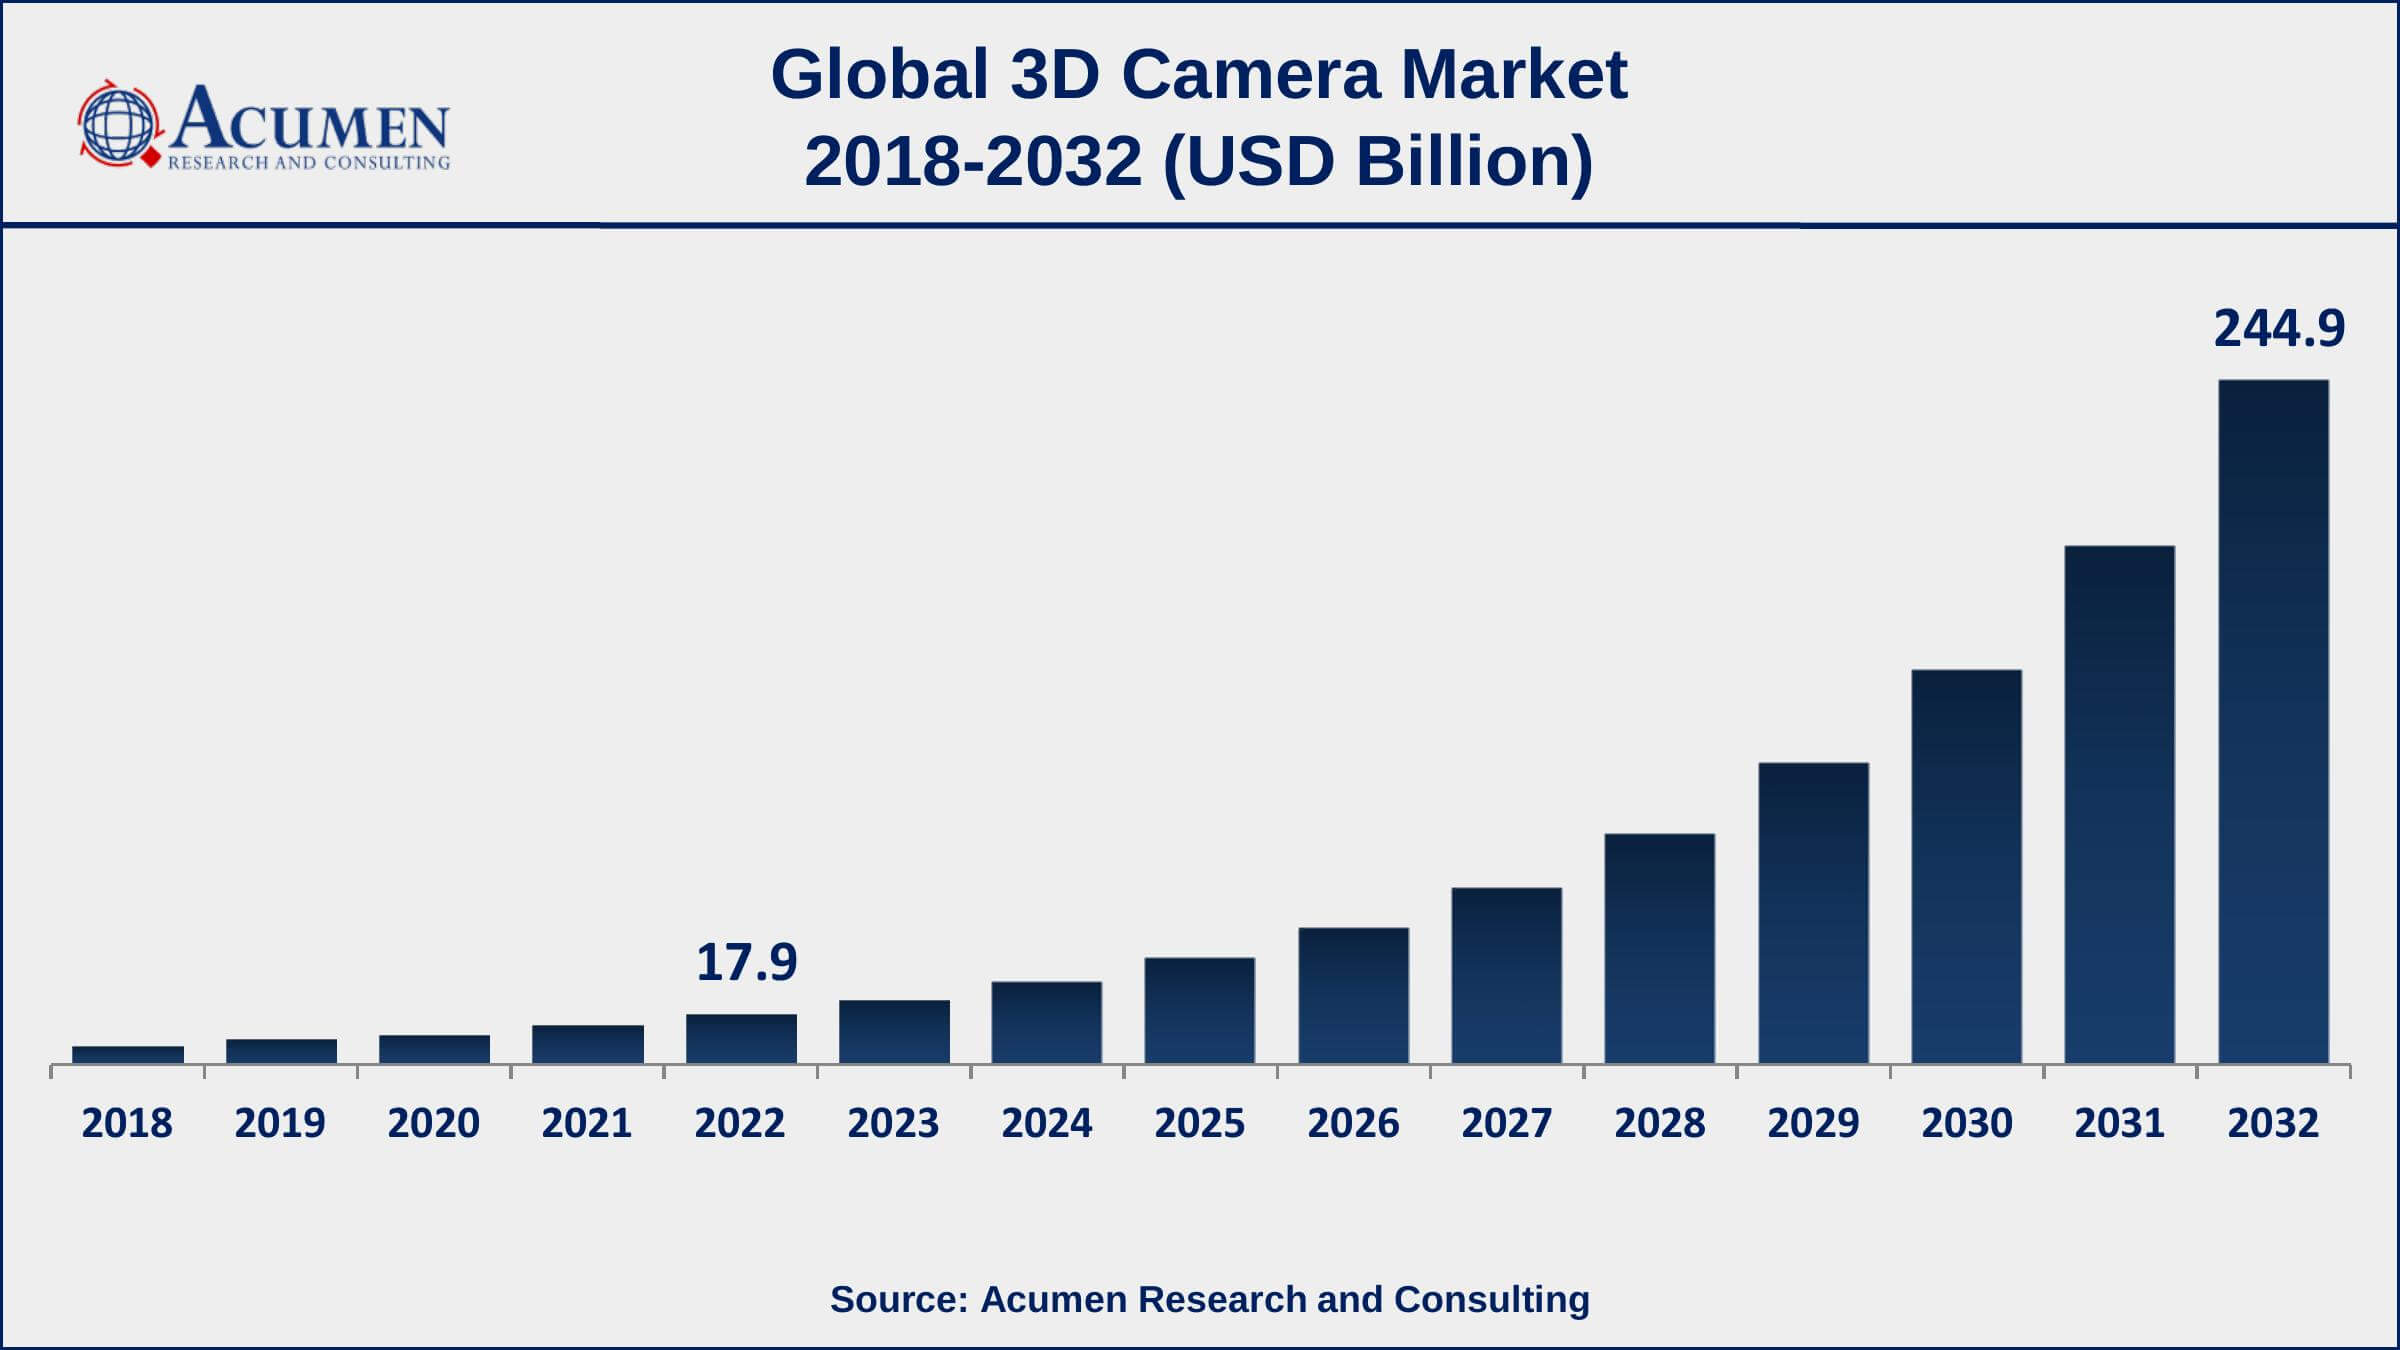 3D Camera Market Drivers